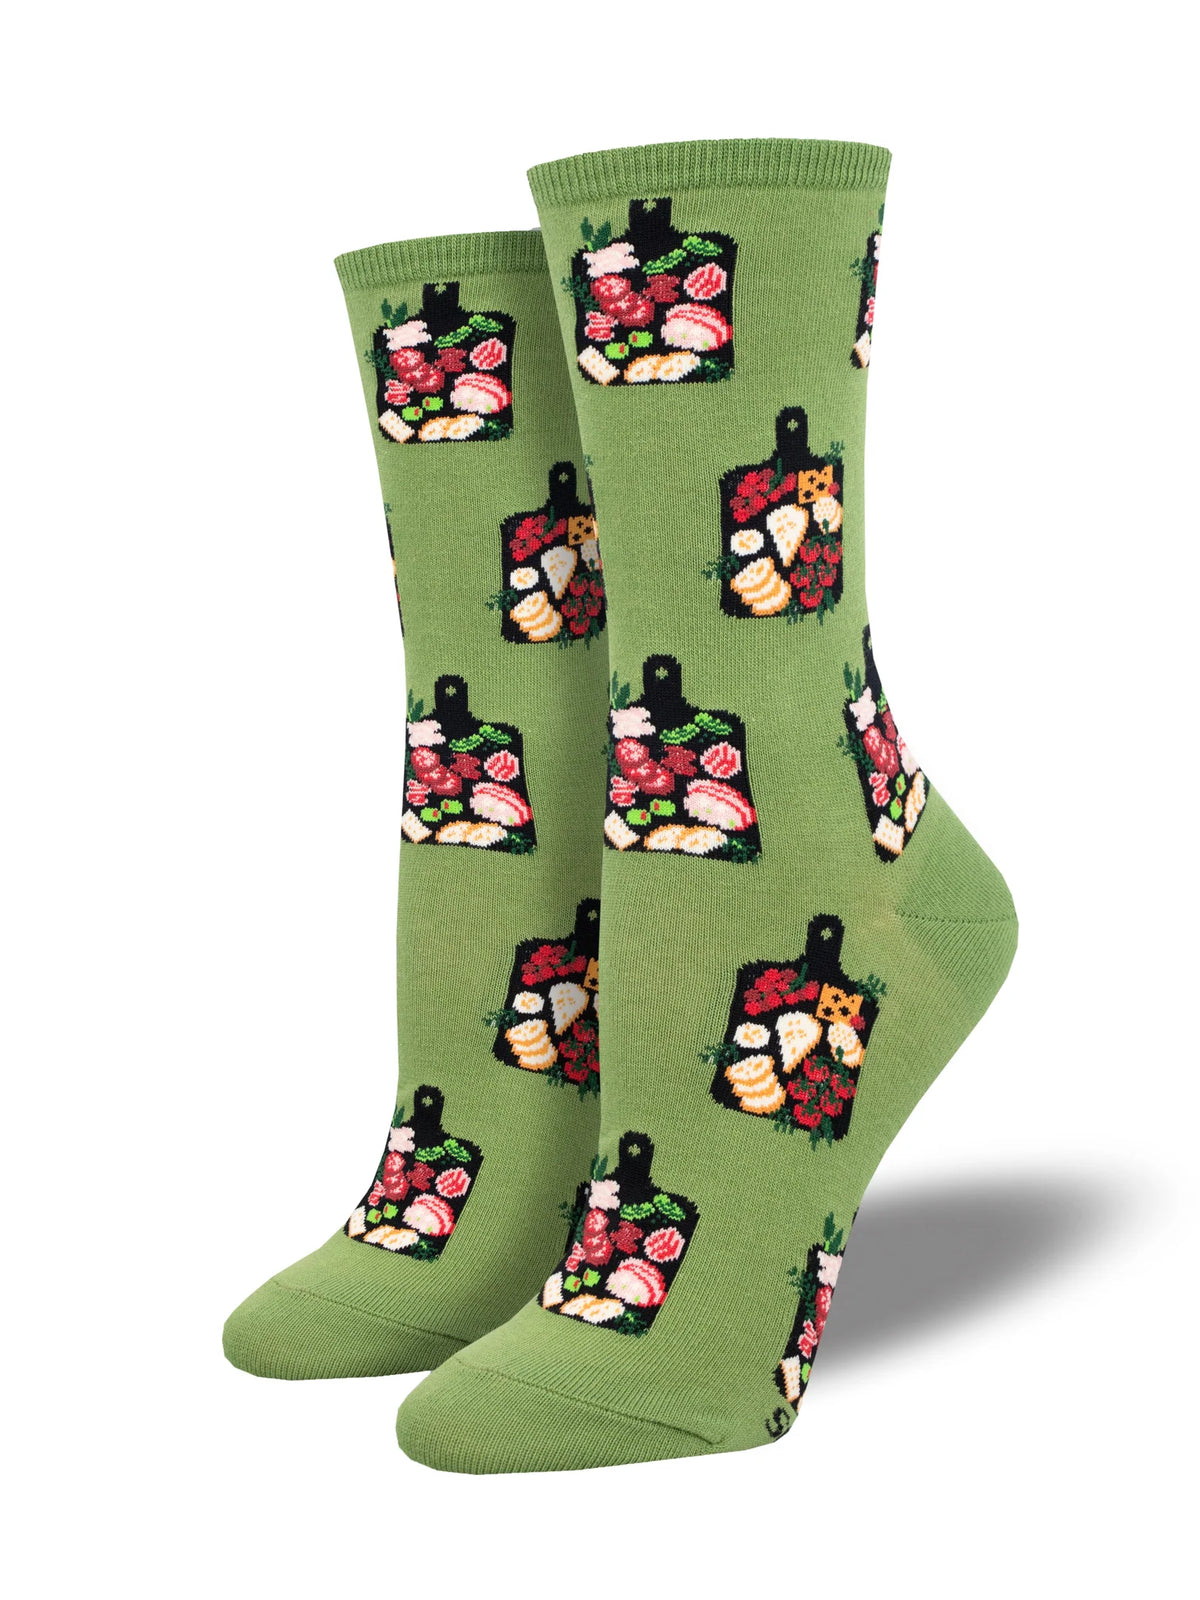 Charcuterie Green Socks Women’s 9-11